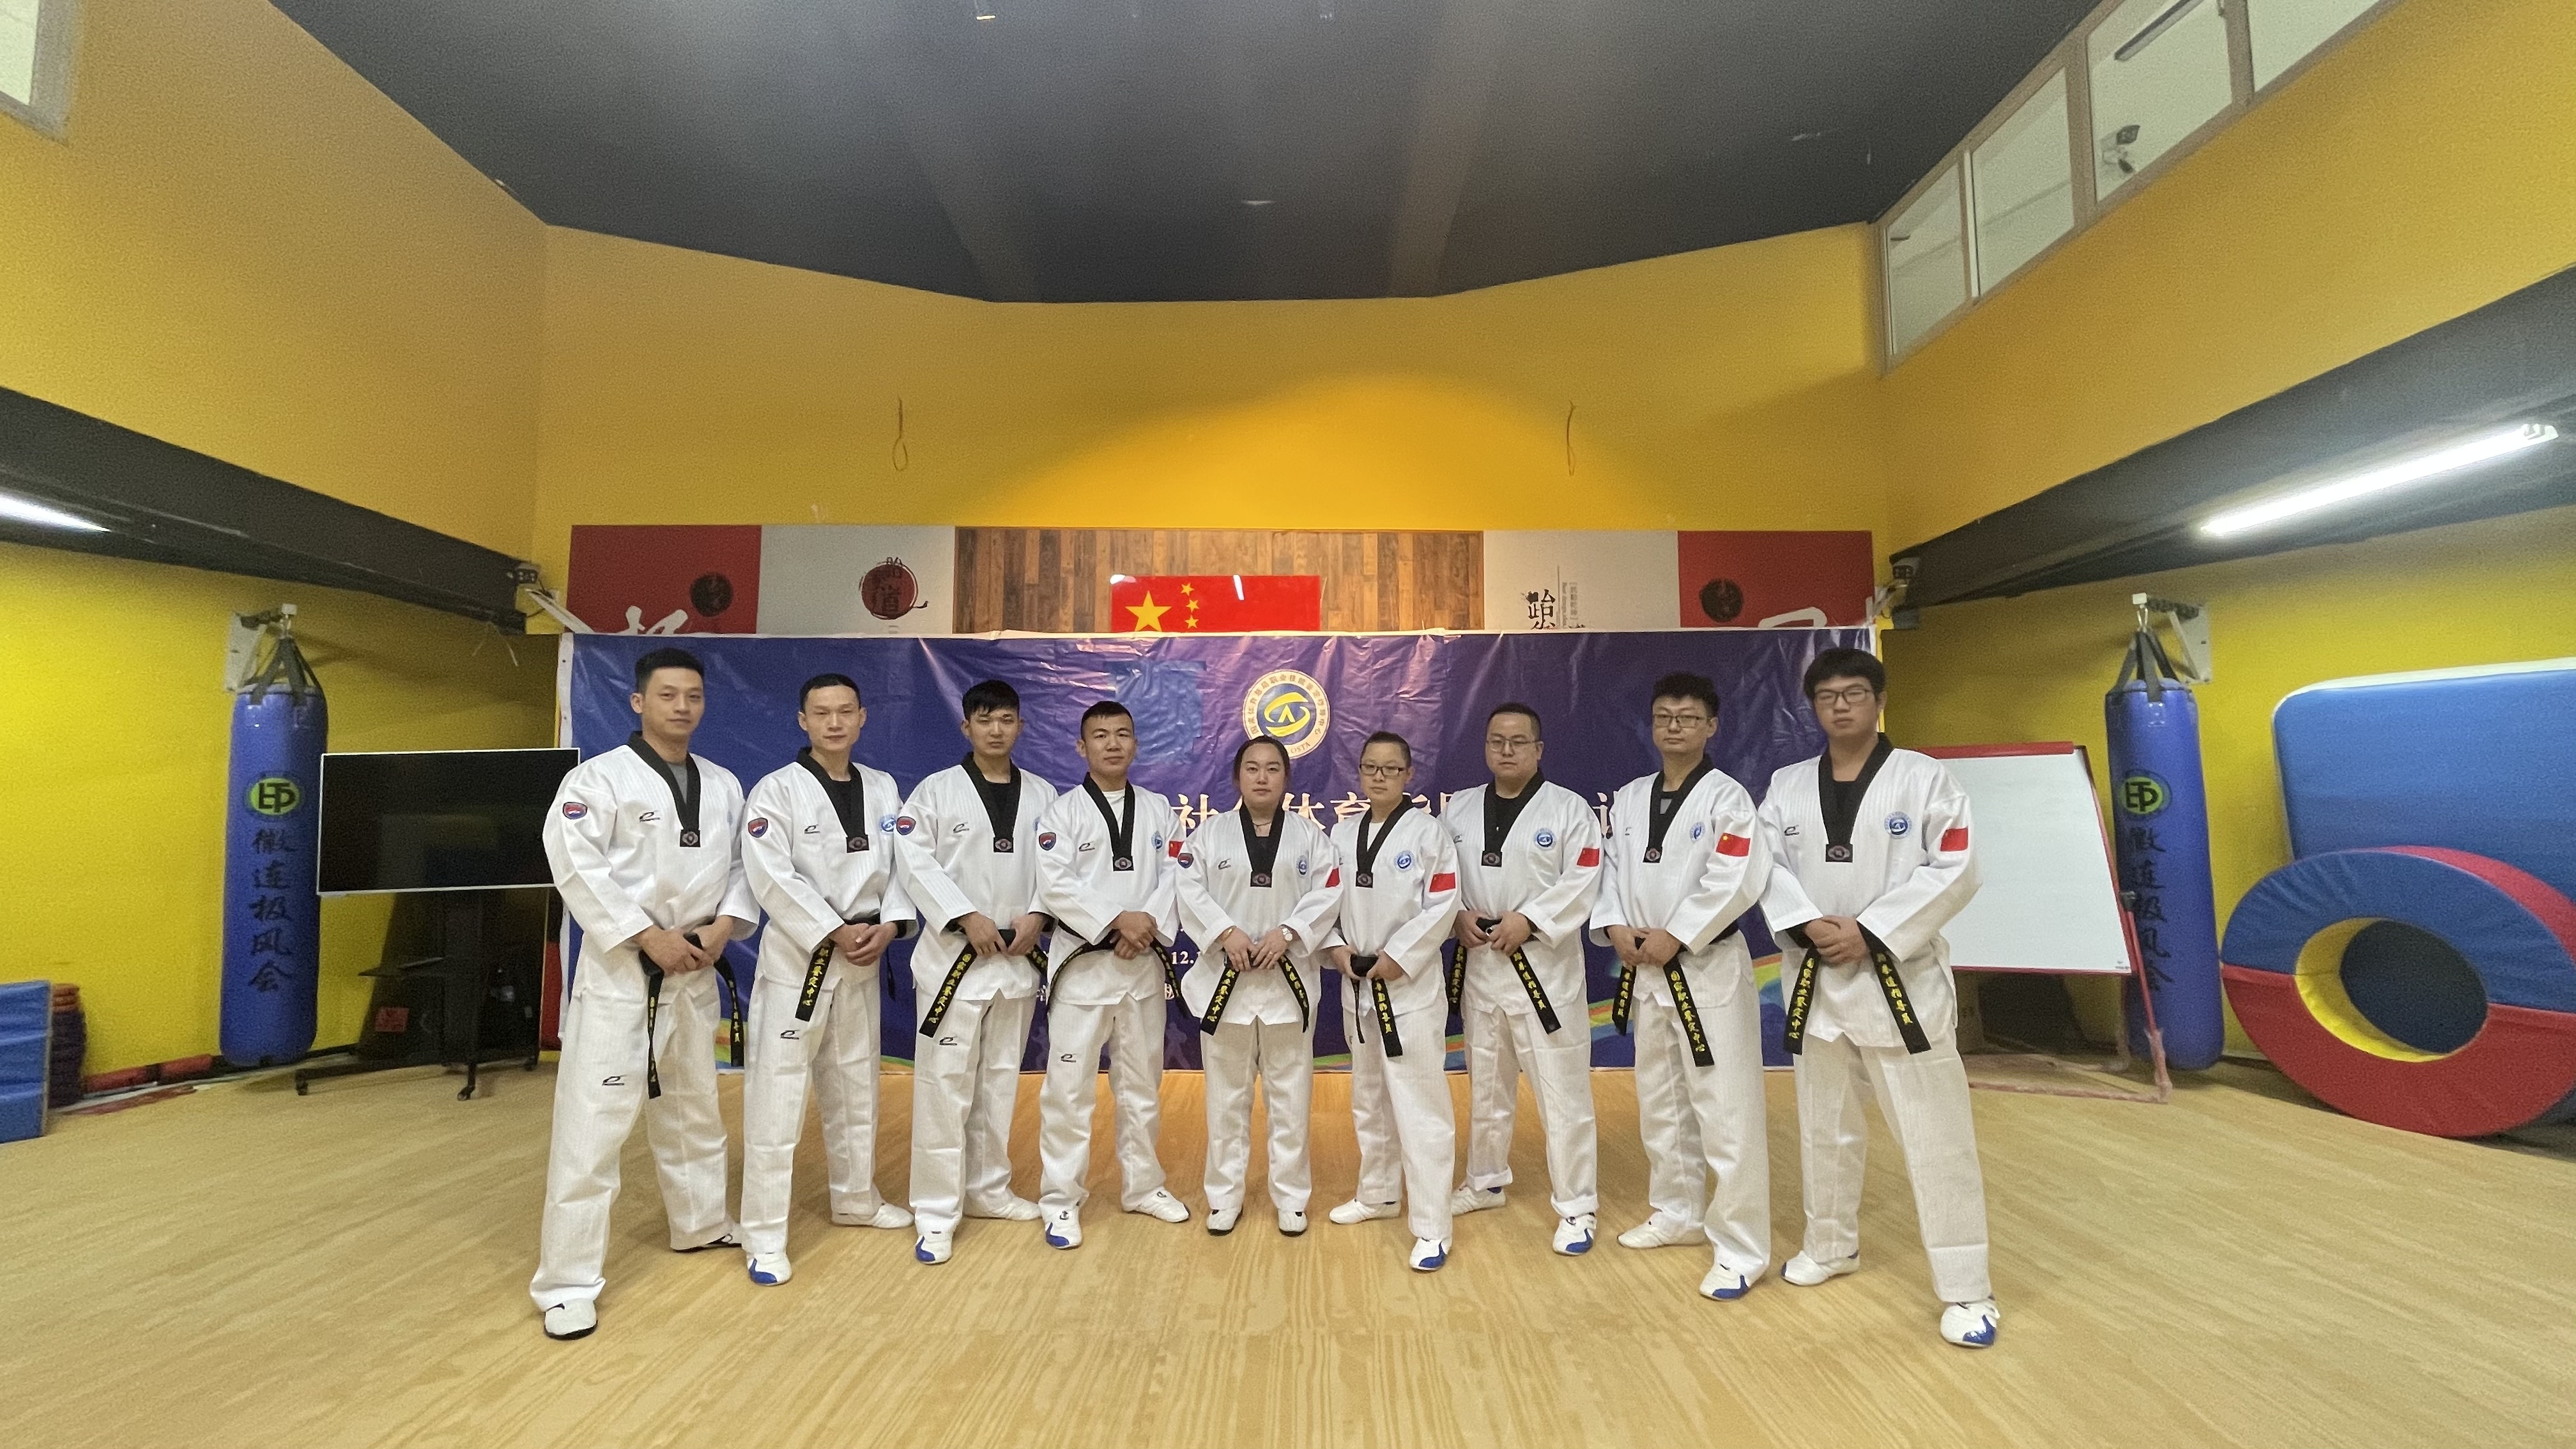 熱烈祝賀蒼鴻全體教練員順利通過國家跆拳道職業資格鑒定